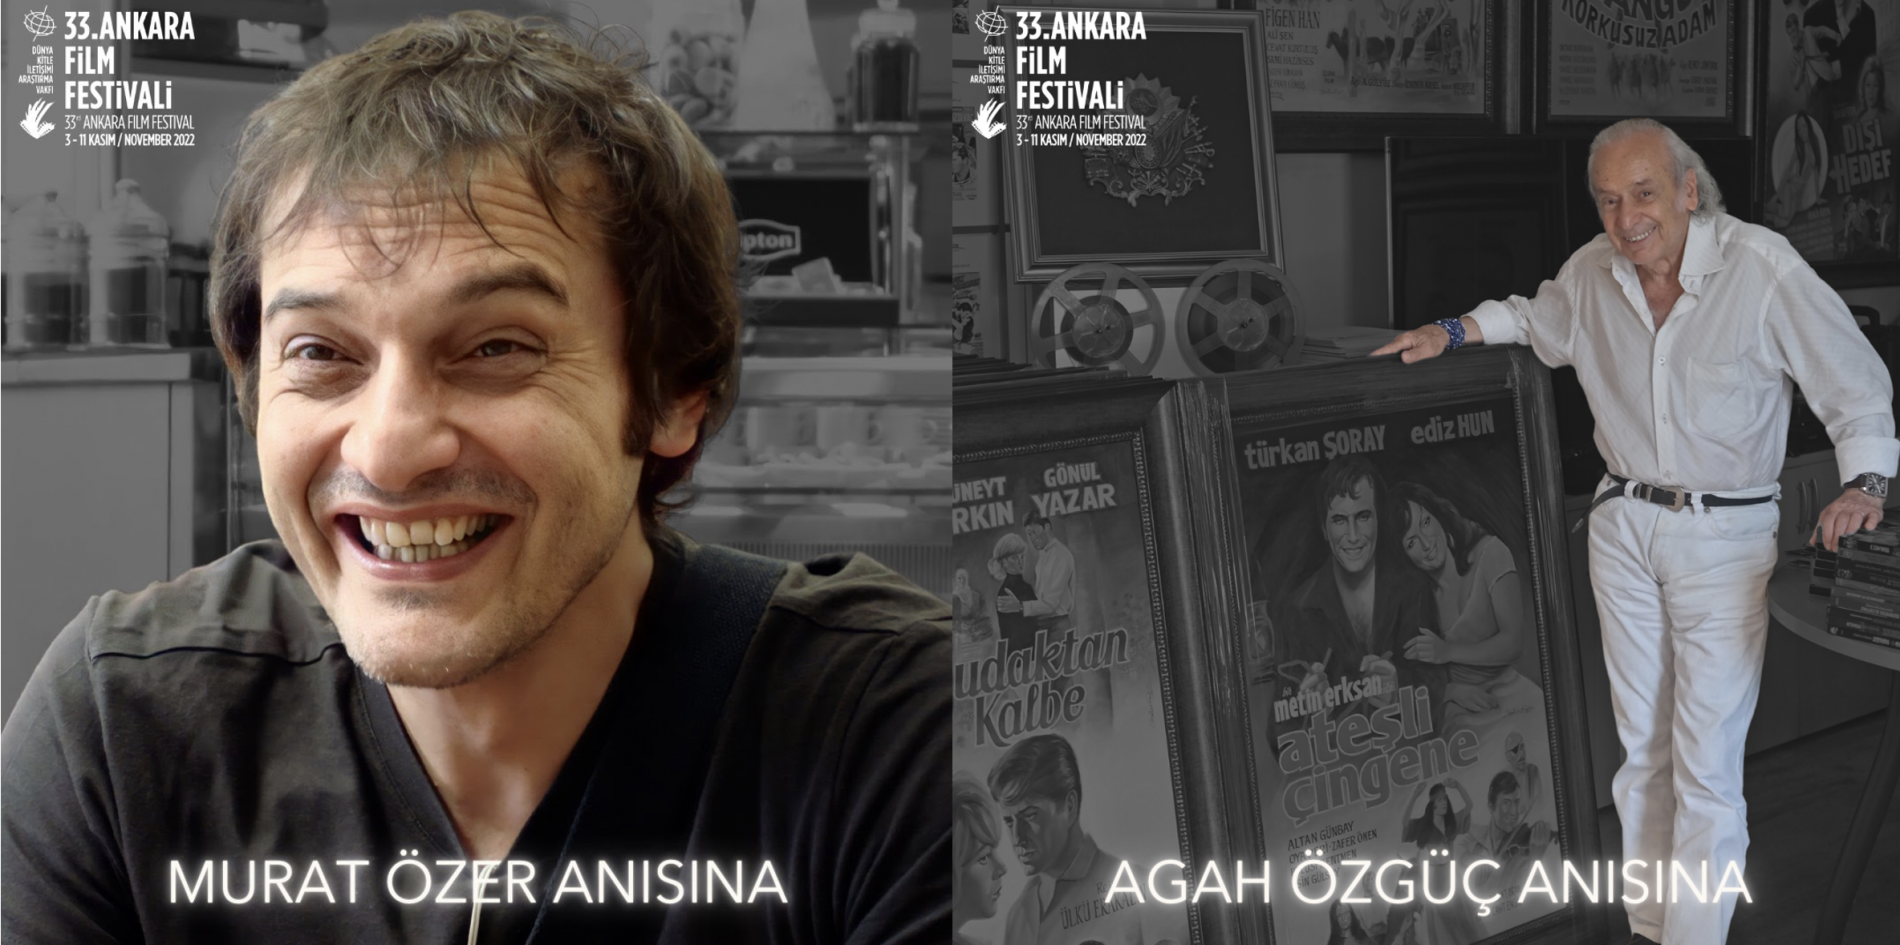 Ankara Film Festivali Murat Özer ve Agah Özgüç’ü Unutmuyor!